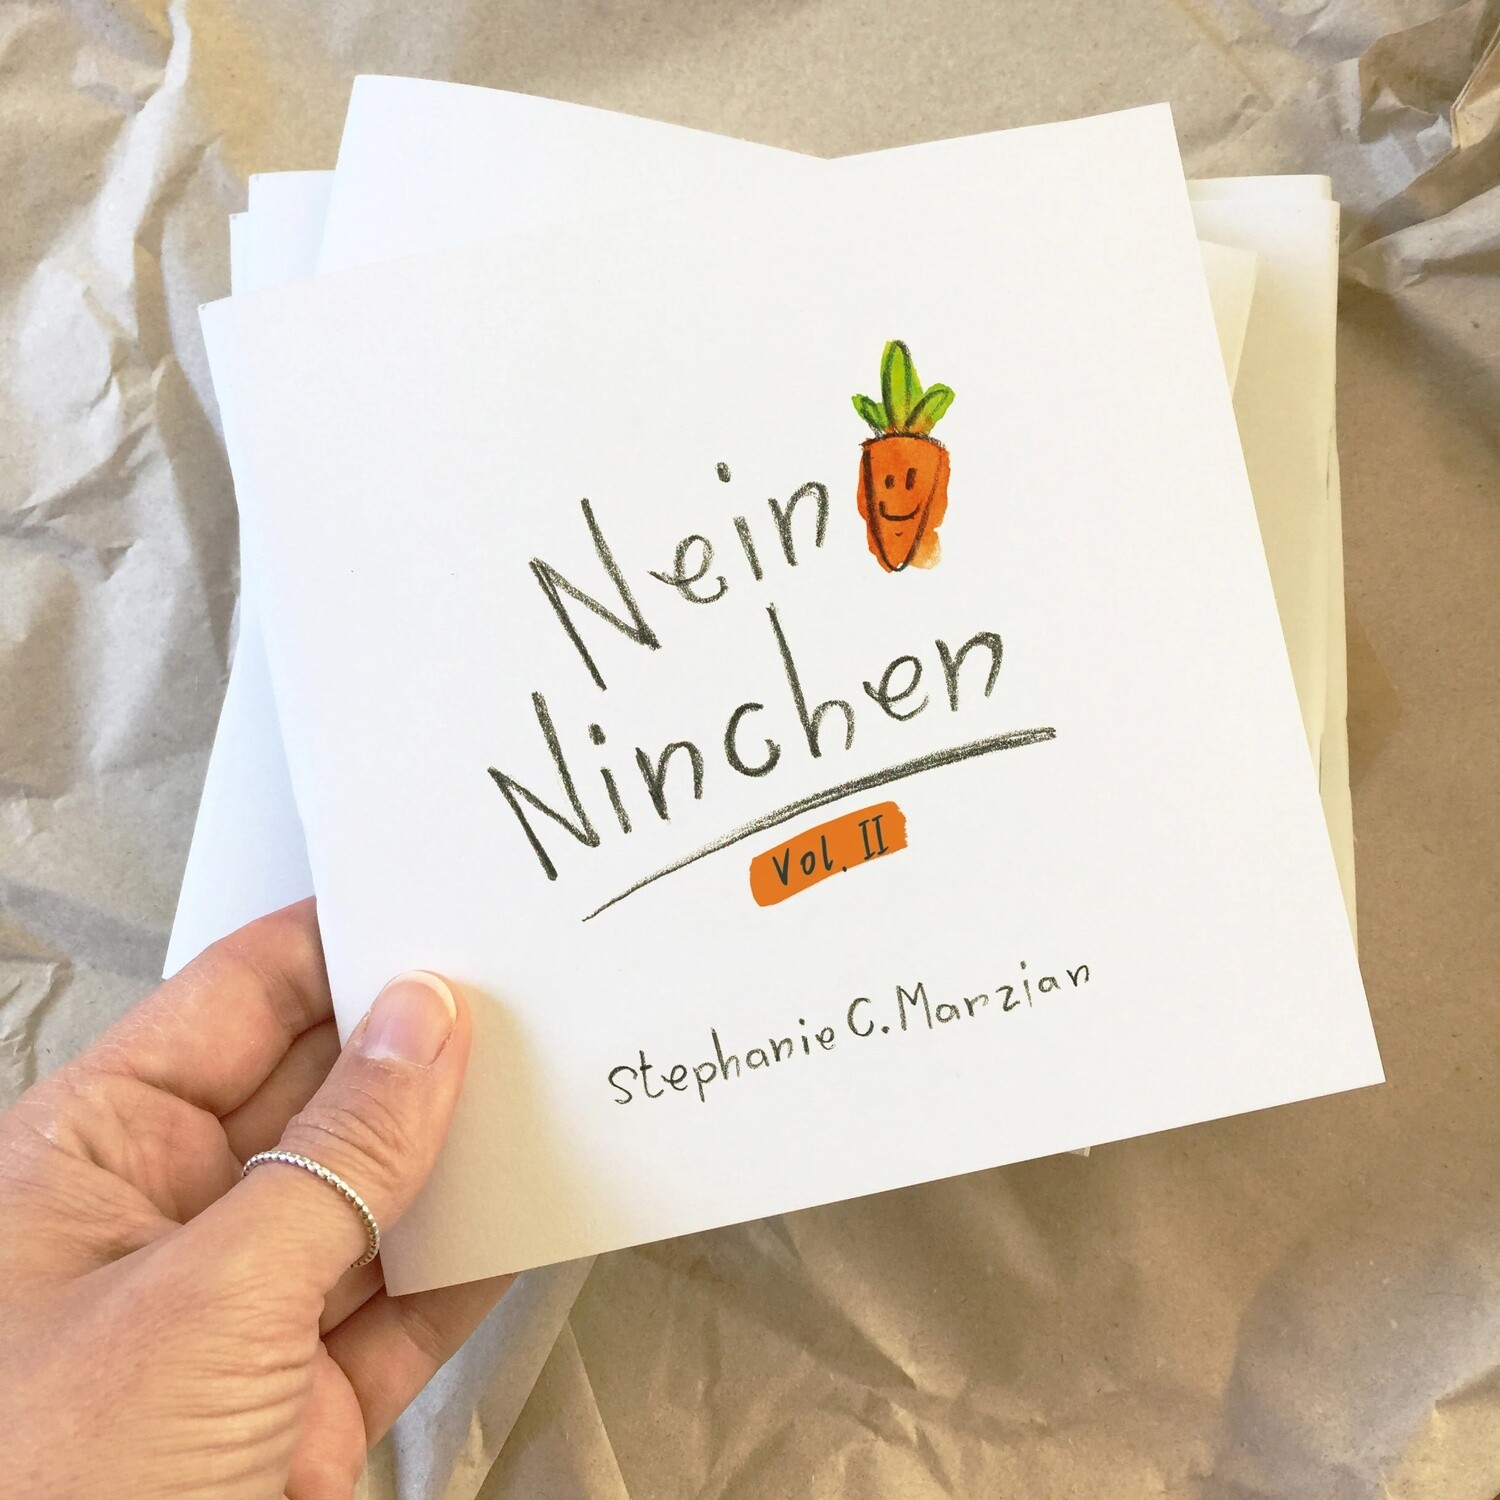 Nein-Ninchen Vol. II - Das Buch - Sprüche &amp; Zeichnungen vom Grummelhasen